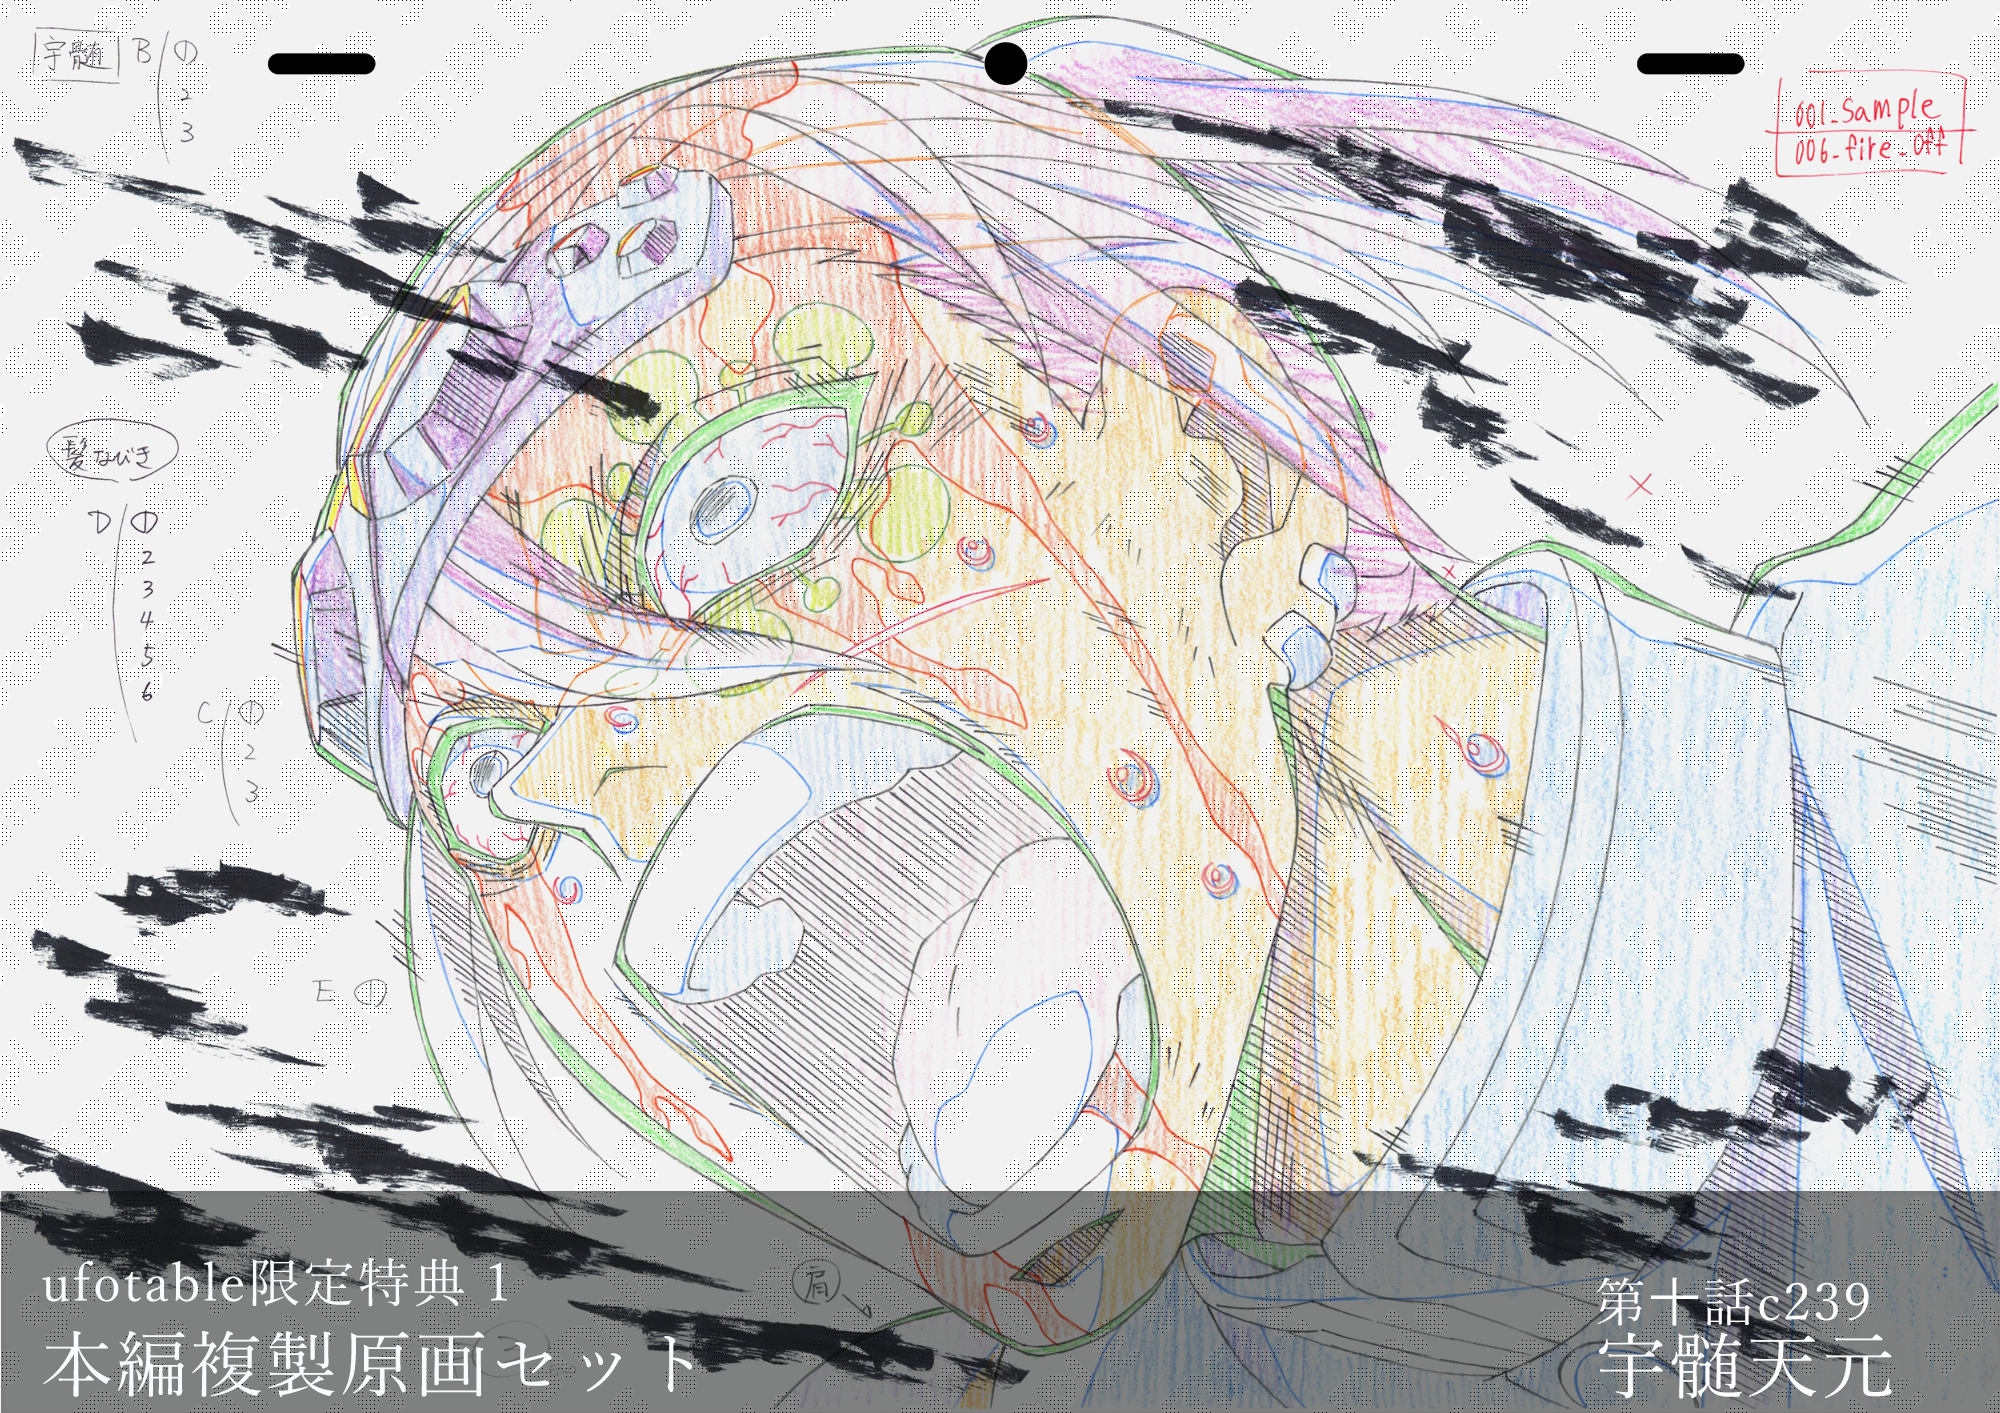 【半額】 鬼滅の刃 完全生産限定TVアニメ本編複製原画セット キャラクターグッズ